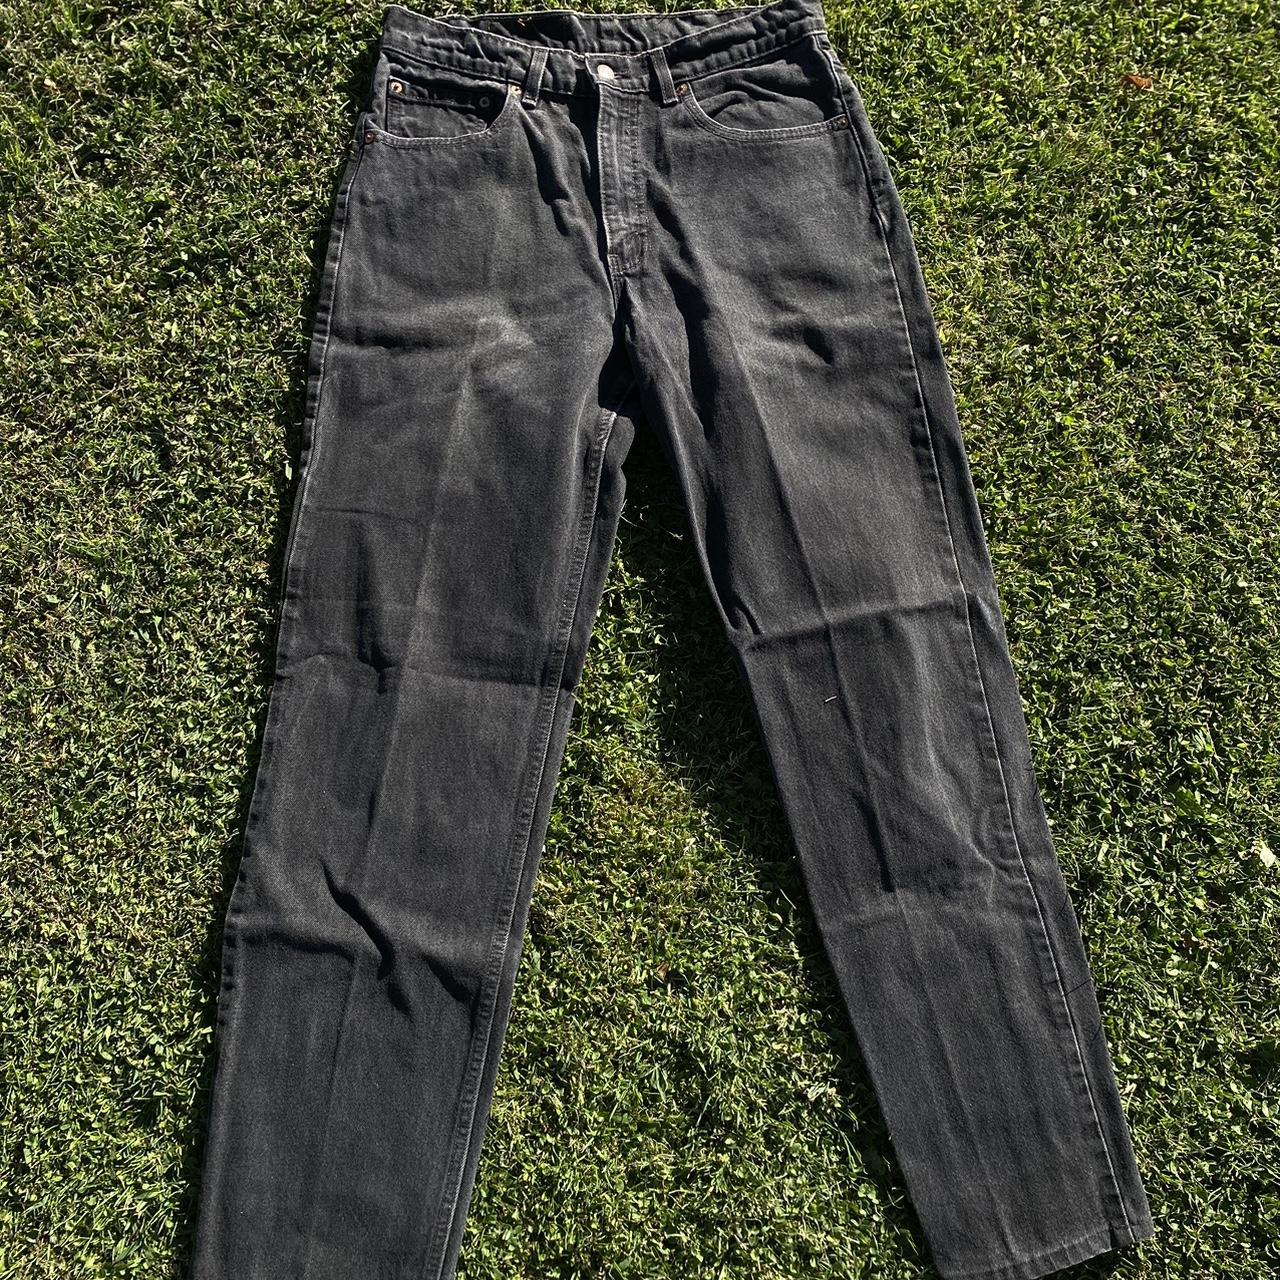 Vintage Levi’s 550 black denim jeans ! Made in USA... - Depop